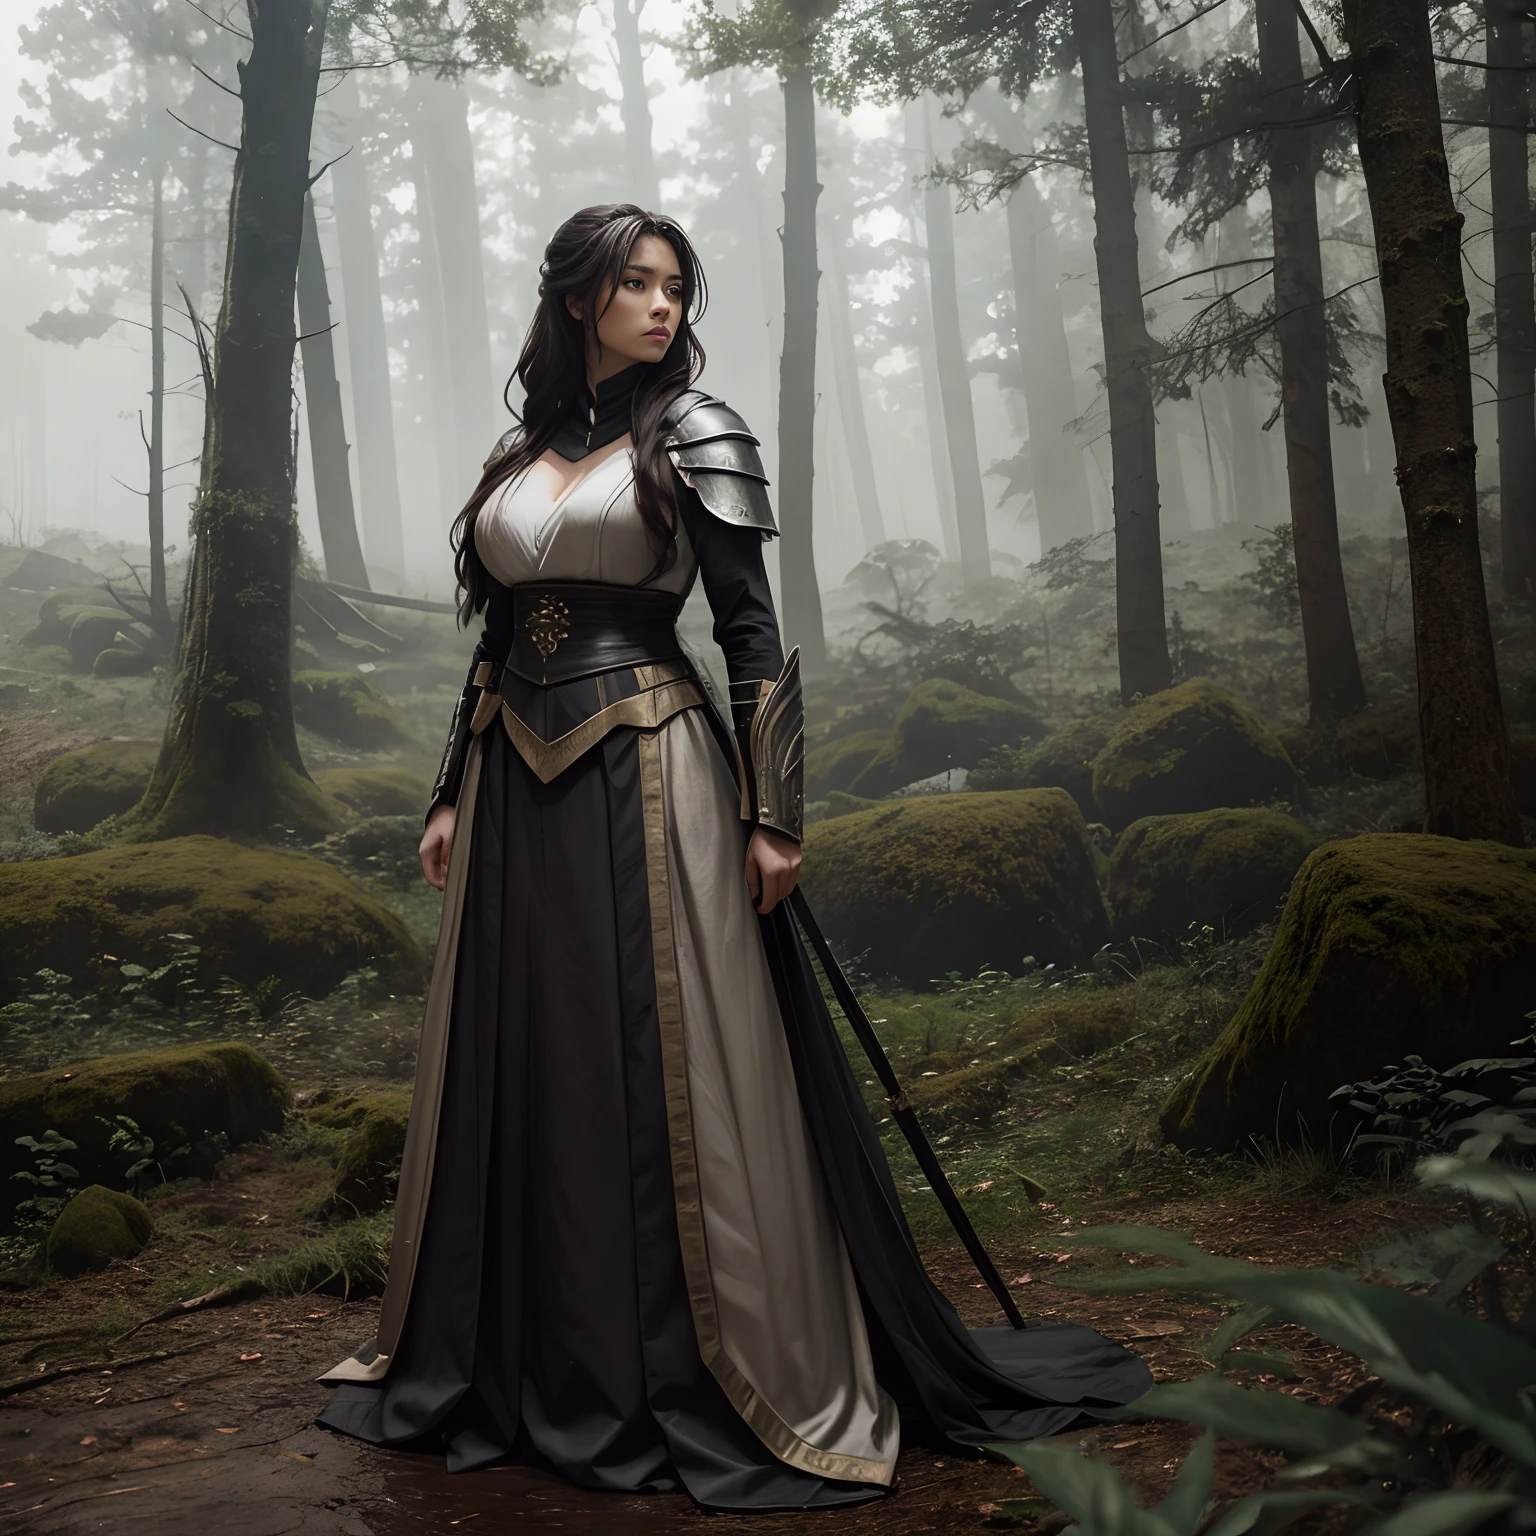 林中迷雾, 一名女战士正在短暂休息, 穿着整齐的衣服, 高的_丰满的